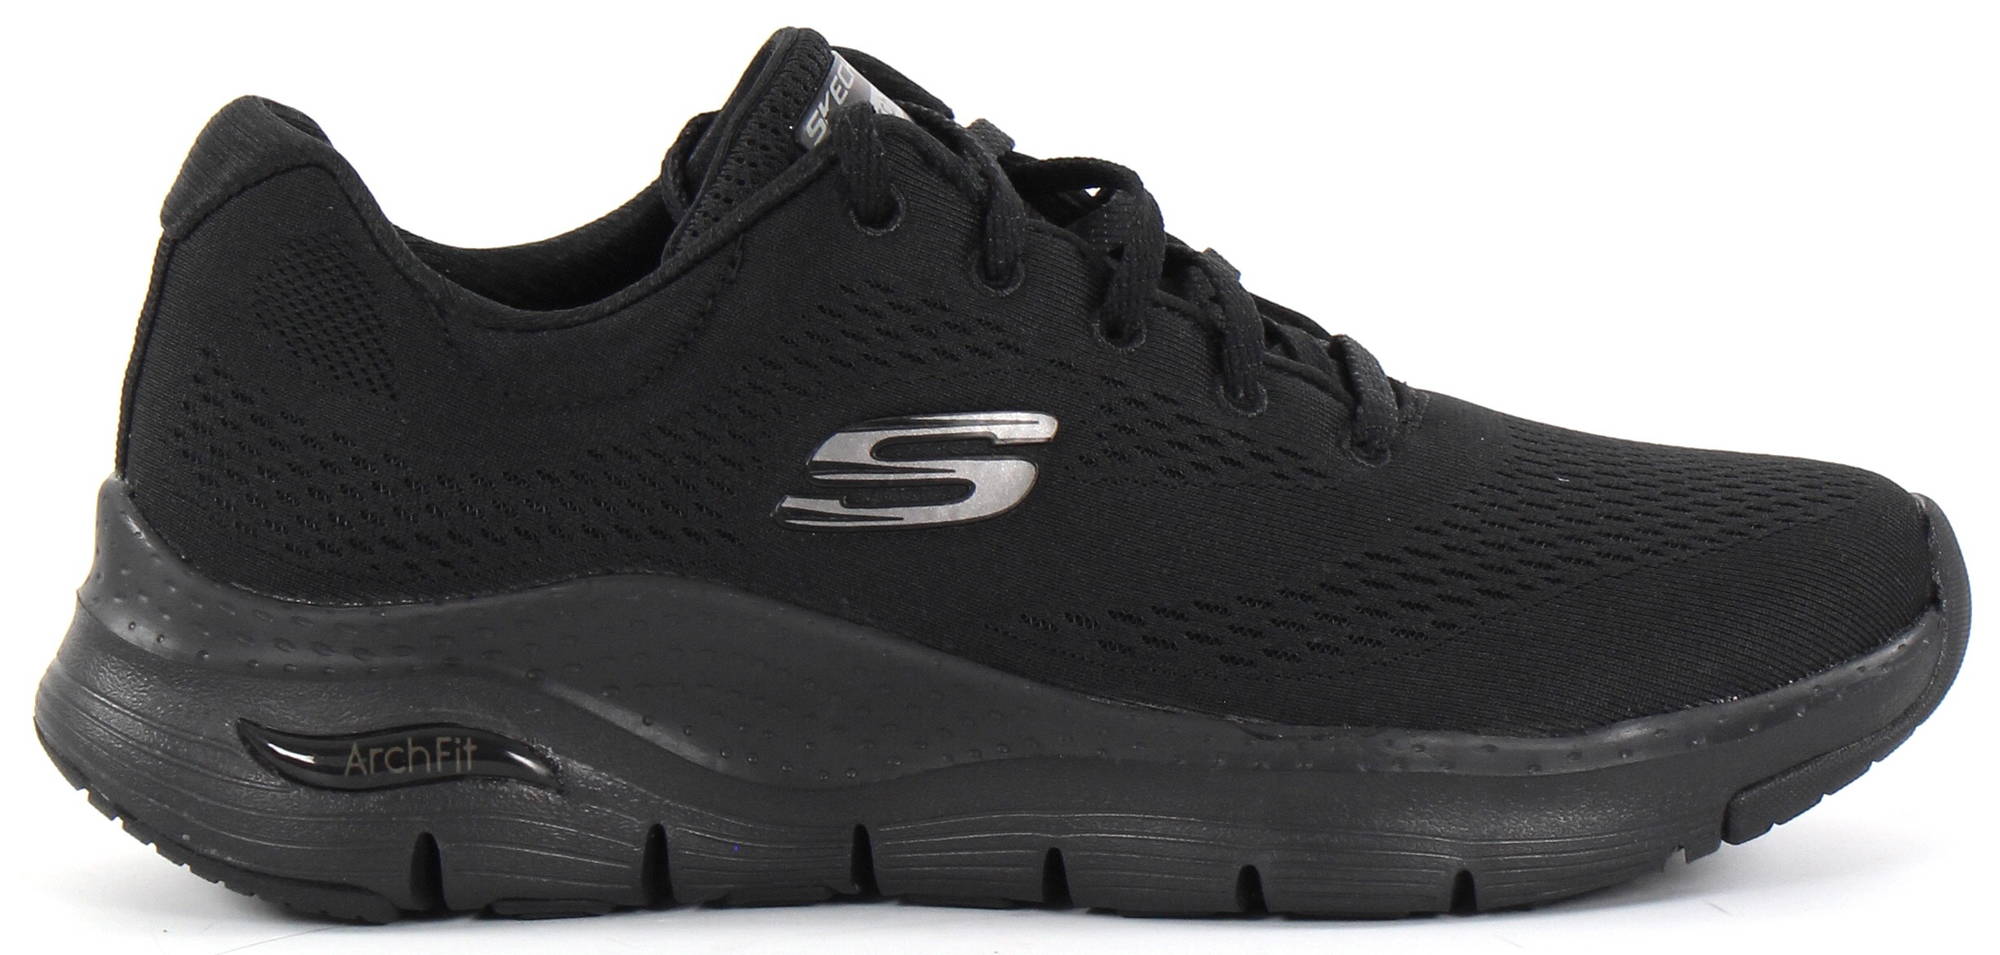 Skechers Sneakers 149057 Arch fit, Black - Stilettoshop.eu webstore